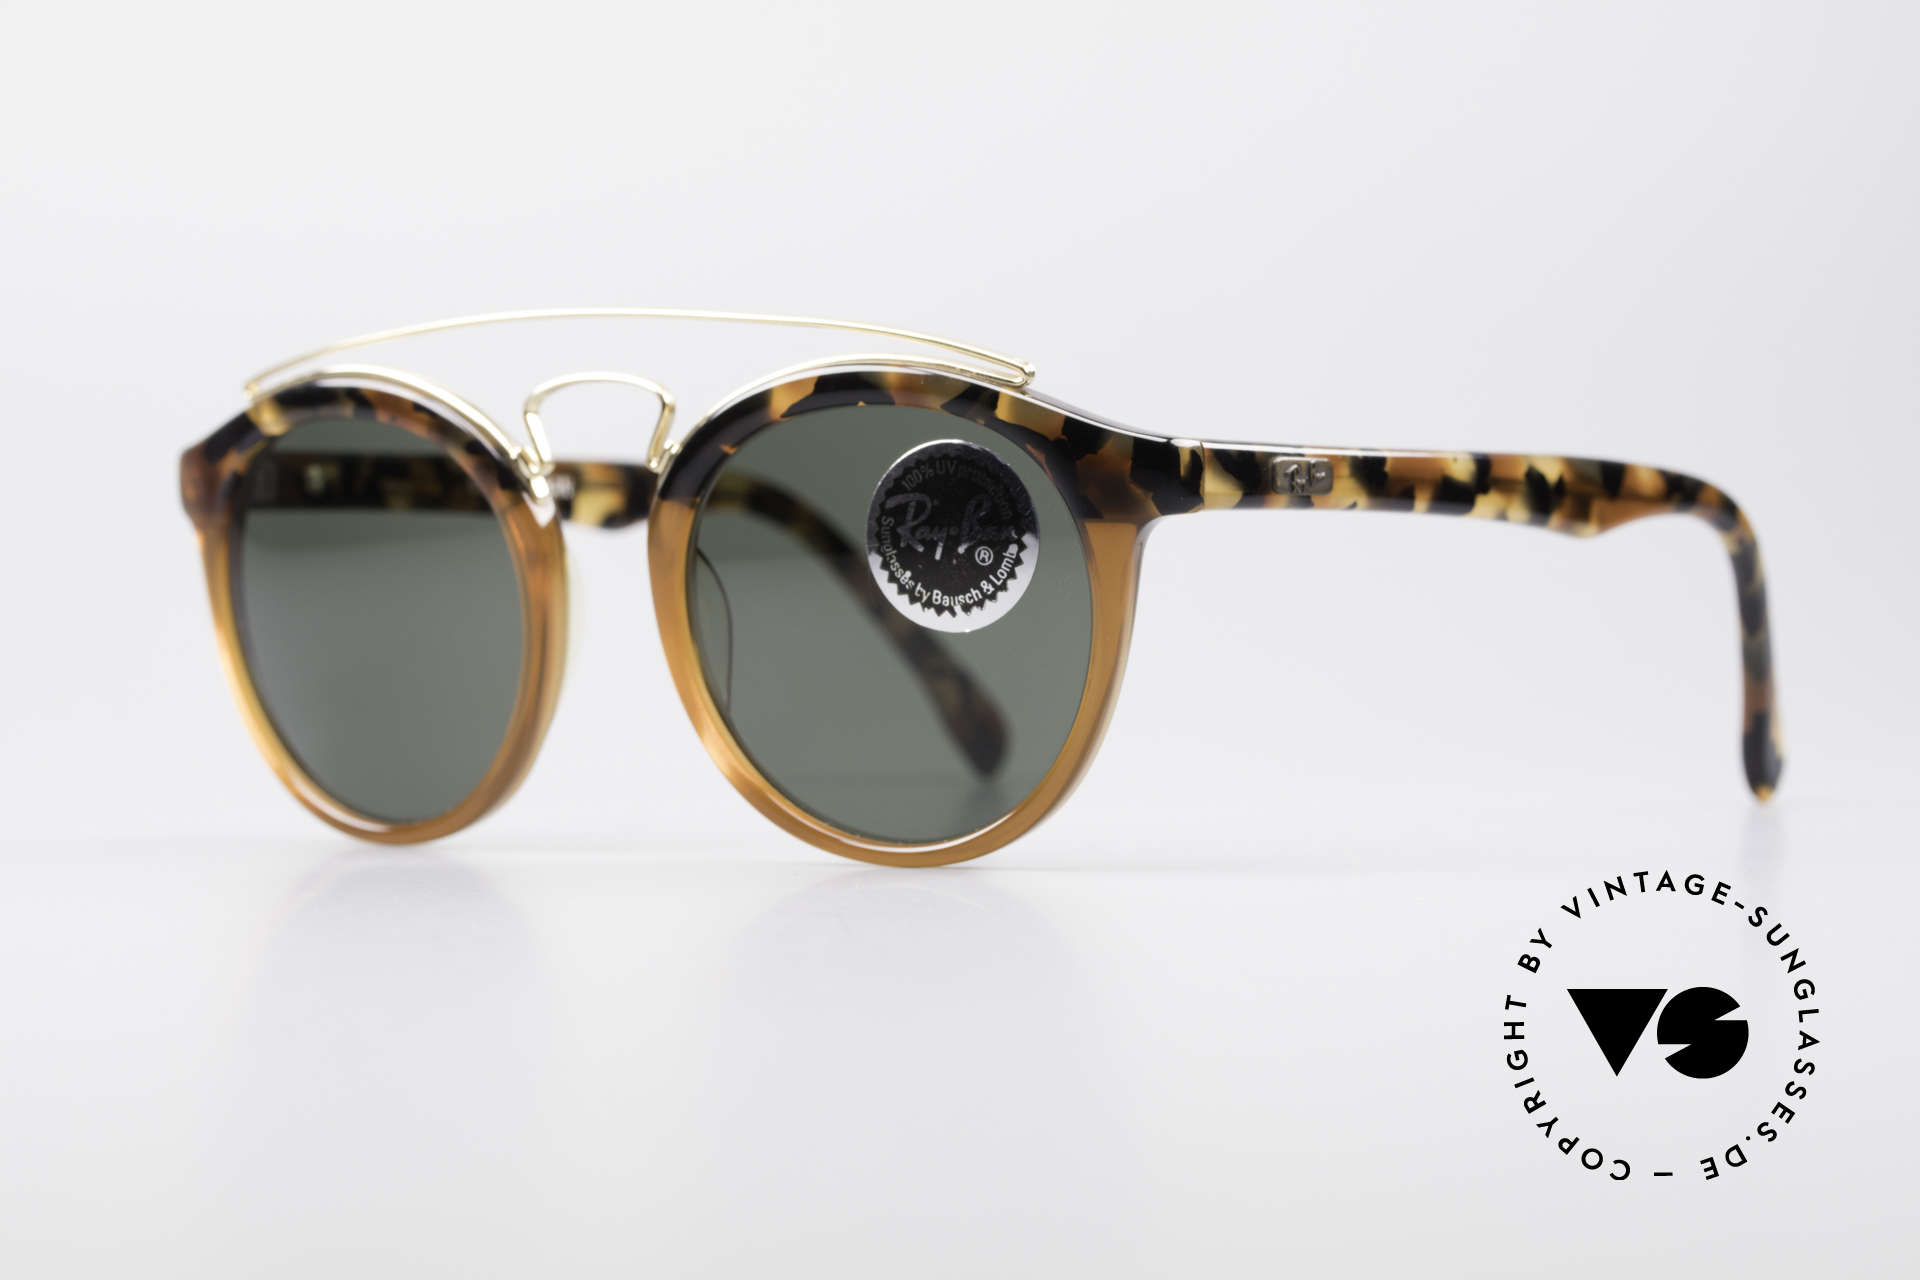 Sunglasses Ray Ban Gatsby Style 4 B&L Bausch Lomb USA